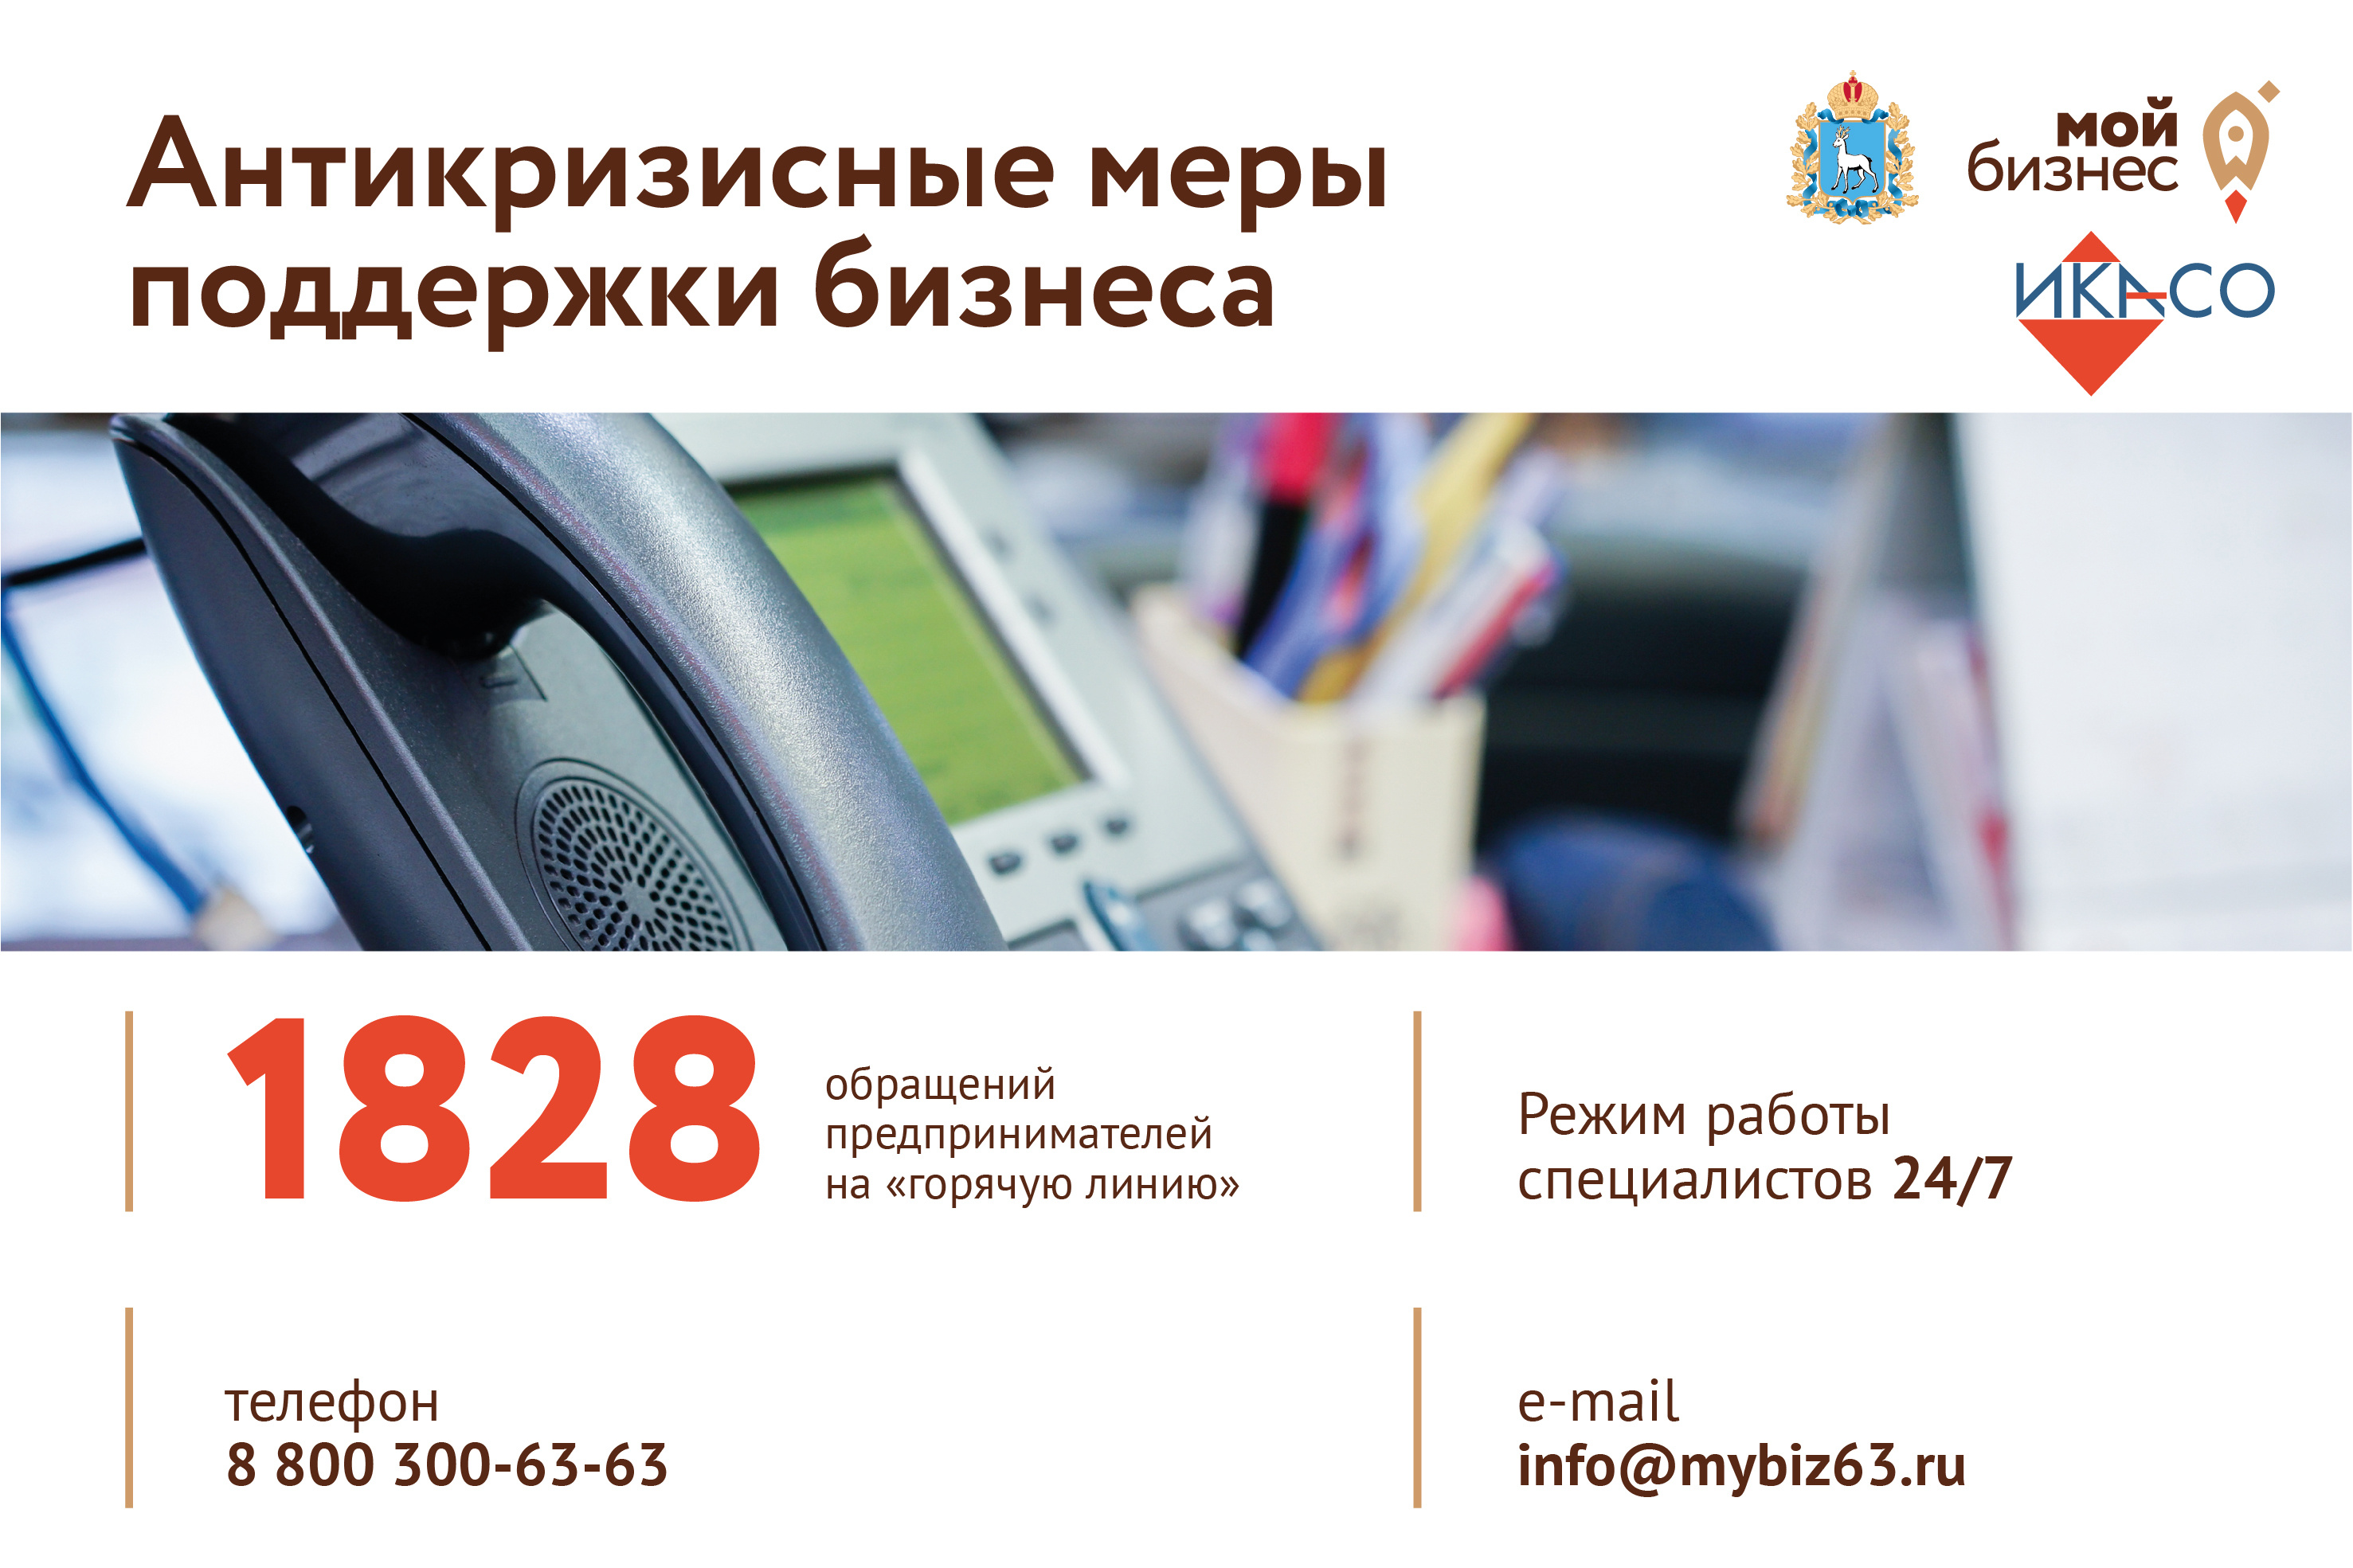 Налоговая московской области горячая линия телефон. Горячая линия поддержки бизнеса.